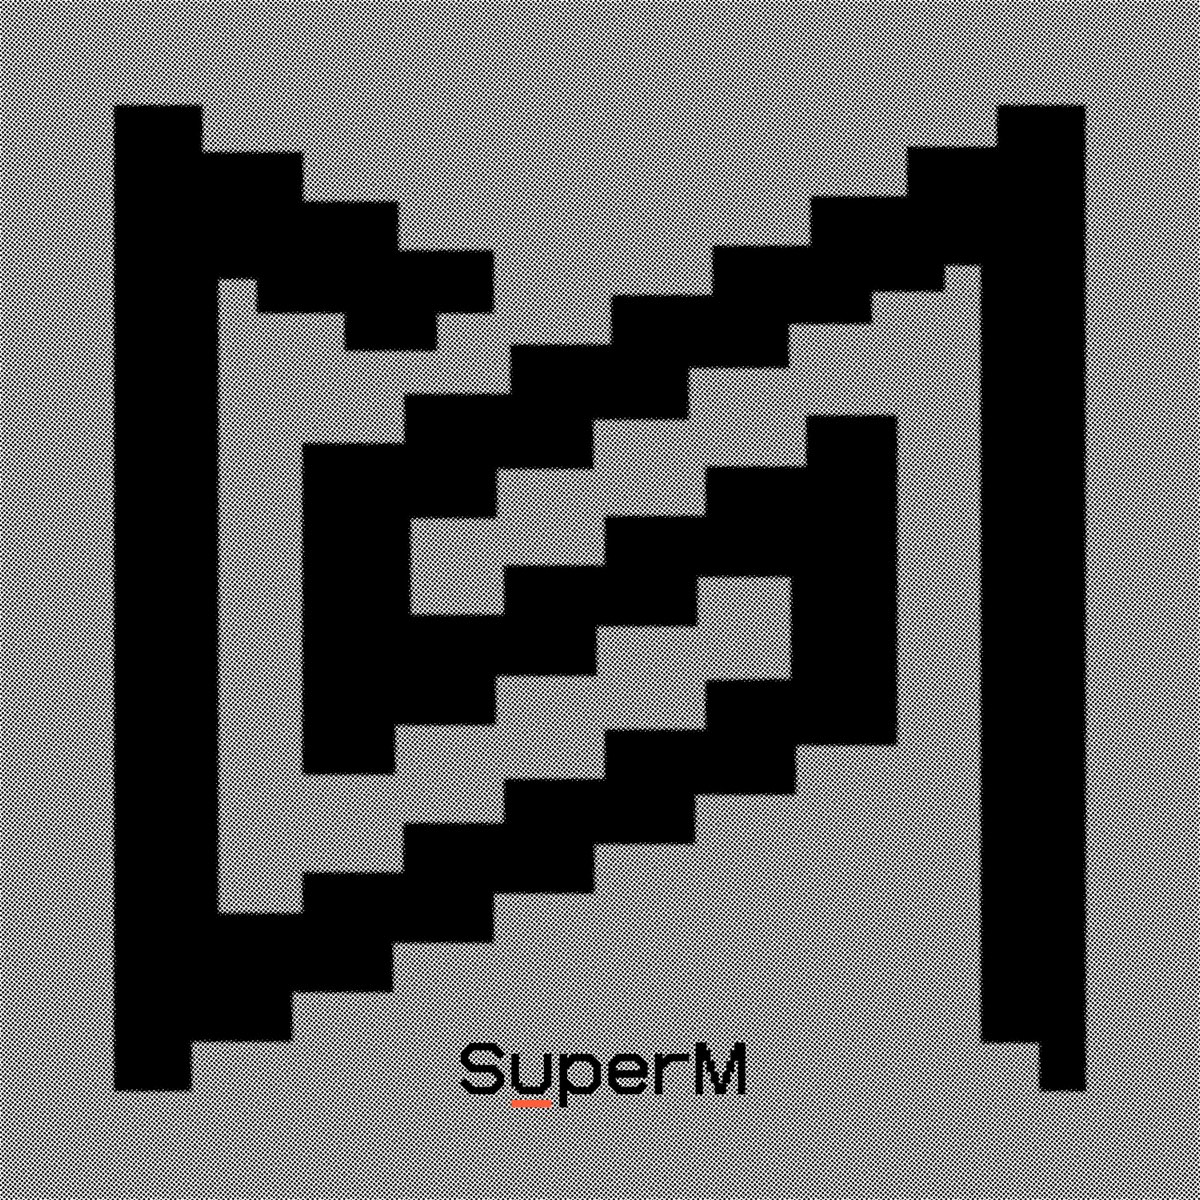 SuperM — Big Chance cover artwork